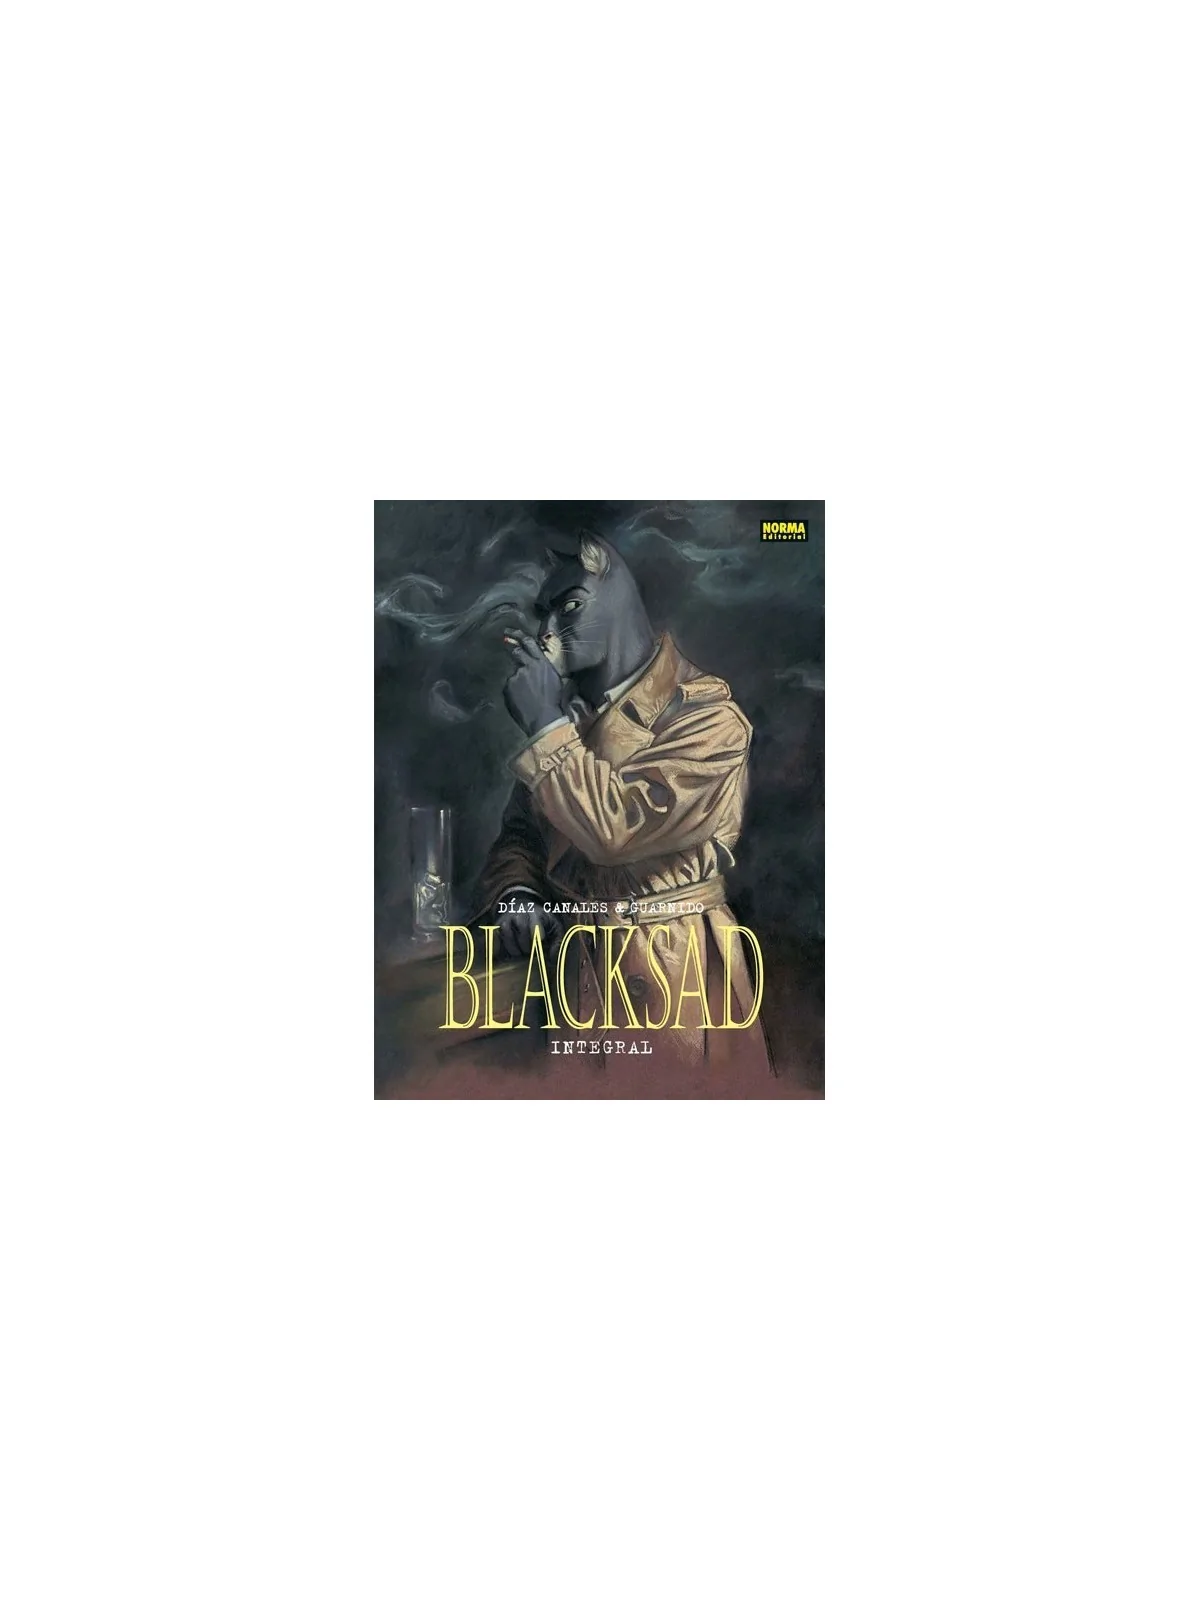 Comprar Blacksad Integral barato al mejor precio 46,55 € de Norma Edit